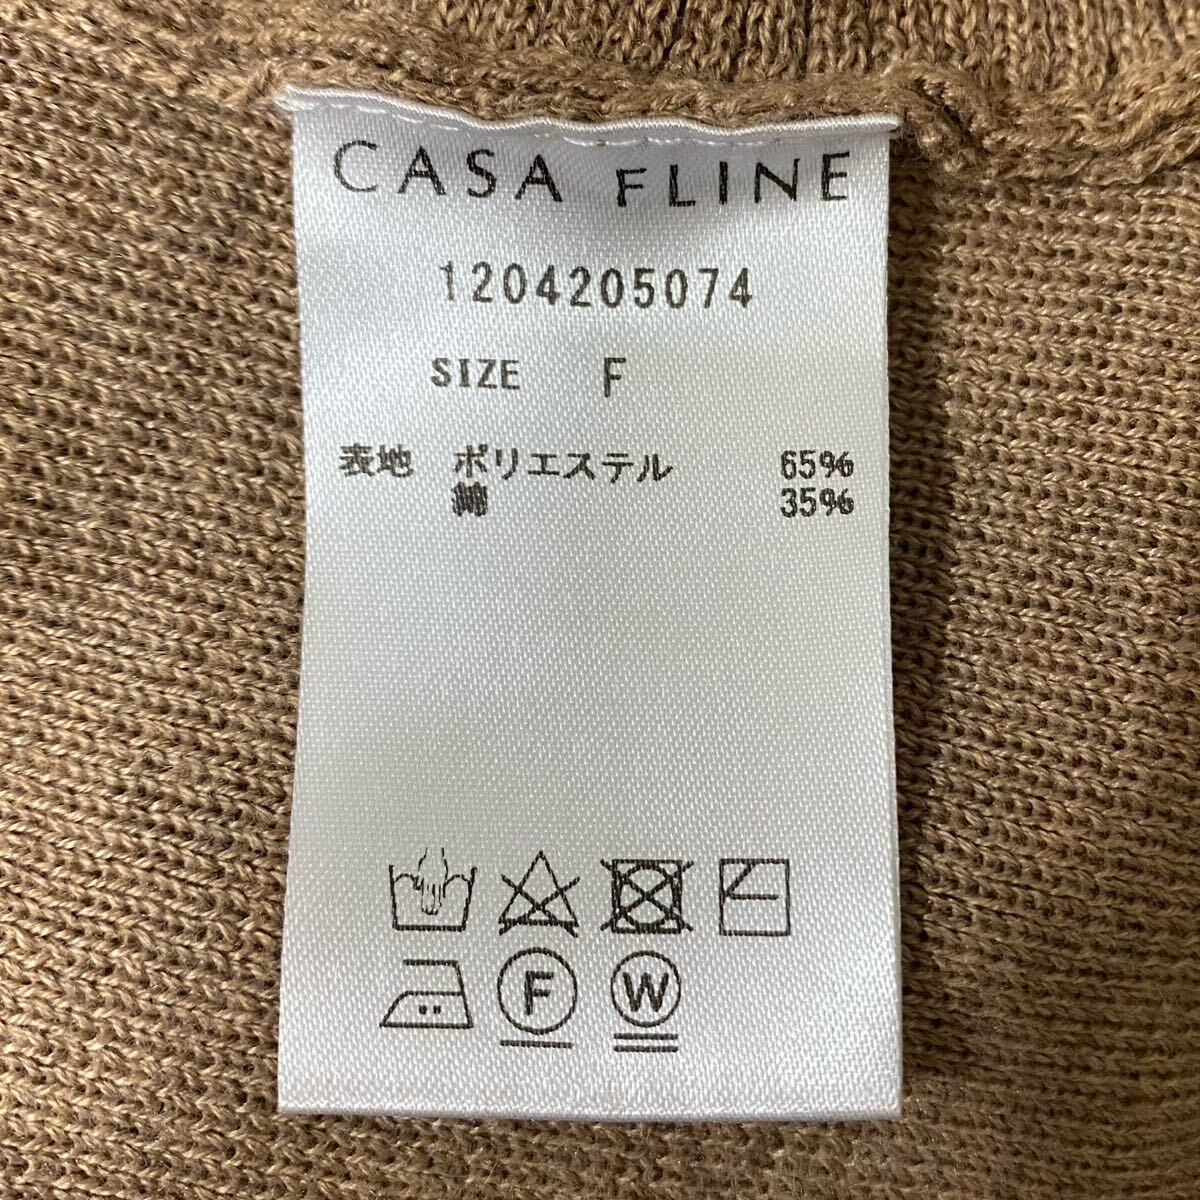 【CASA FLINE】 ... хлопок   переработка  полиэстр  вязаный   платье  